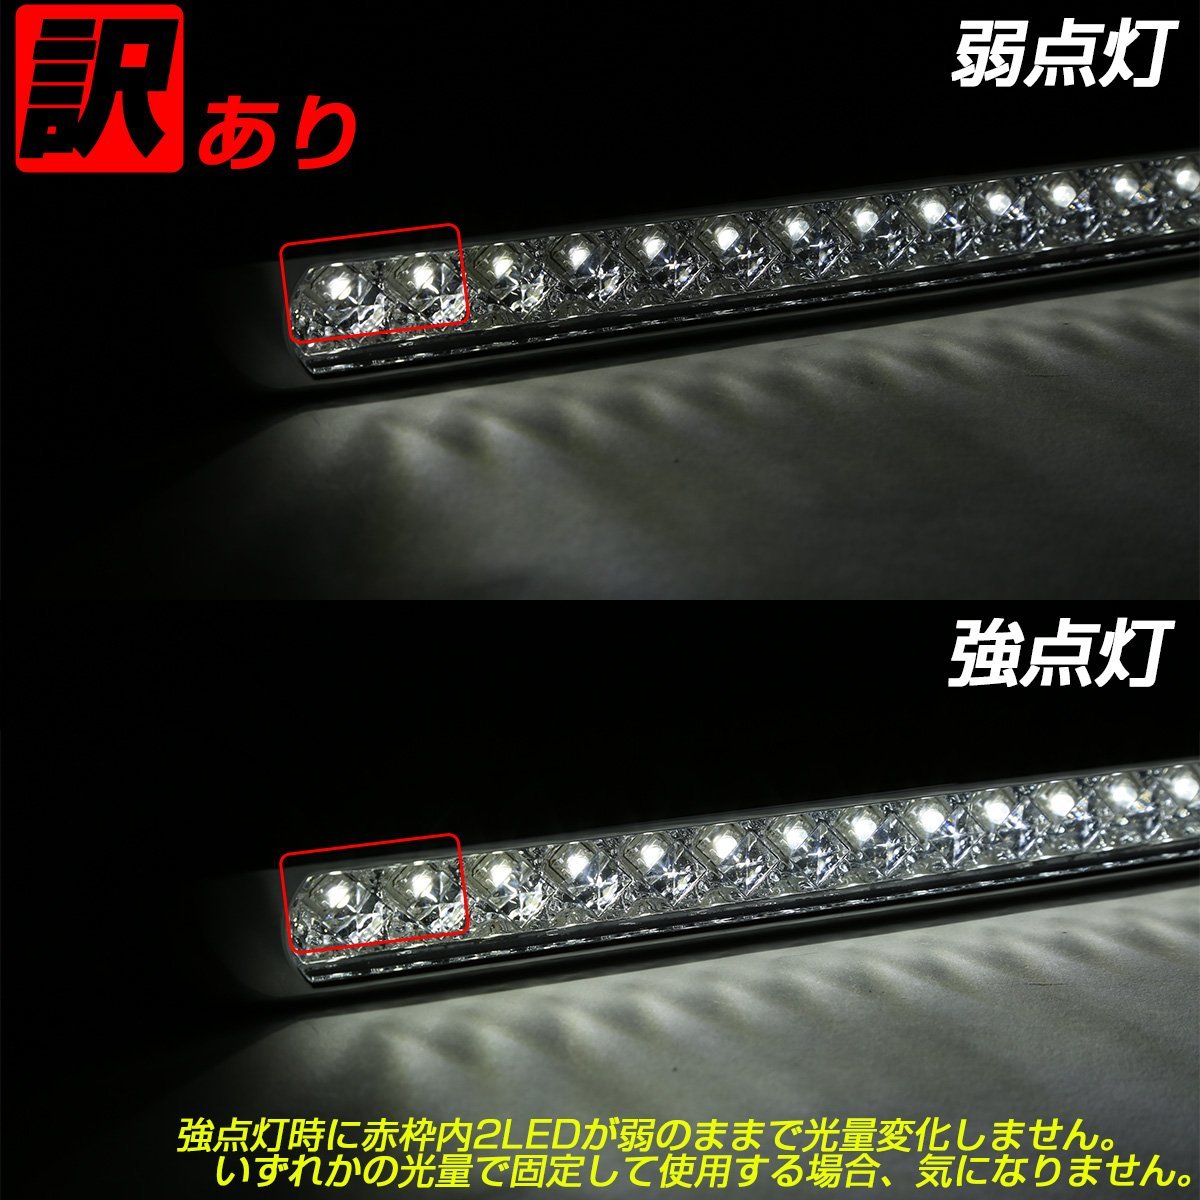 訳あり 17連 LED スーパーワイド マーカー ランプ 12V 24V兼用 レッドレンズ レッド発光 車高灯 サイドマーカーに ZZF-233_画像9